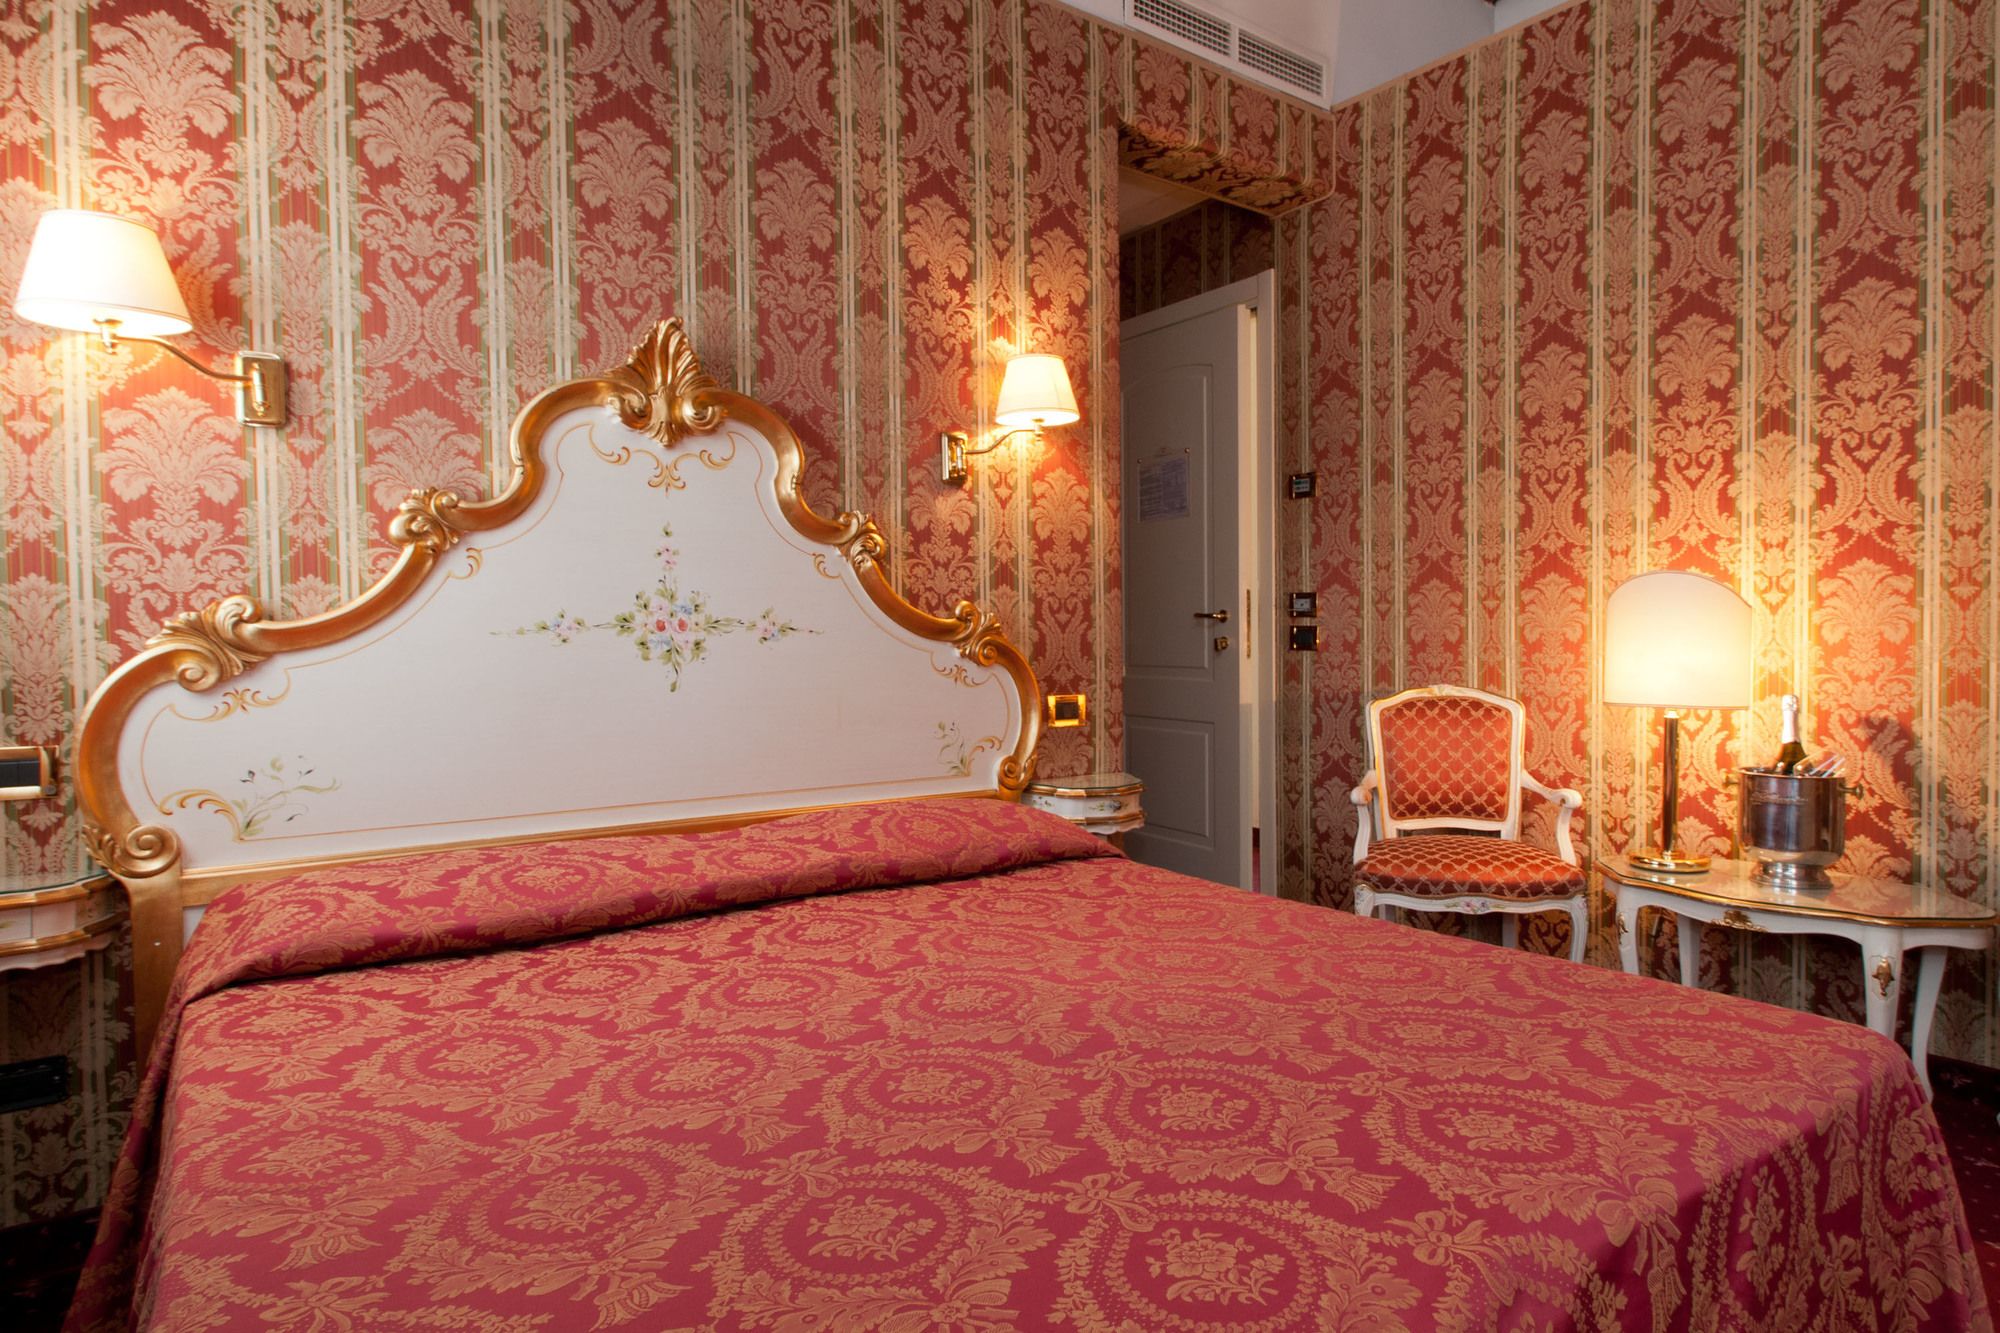 Discover Graspo De Ua, hotel in Venice Italy near Rialto Bridge